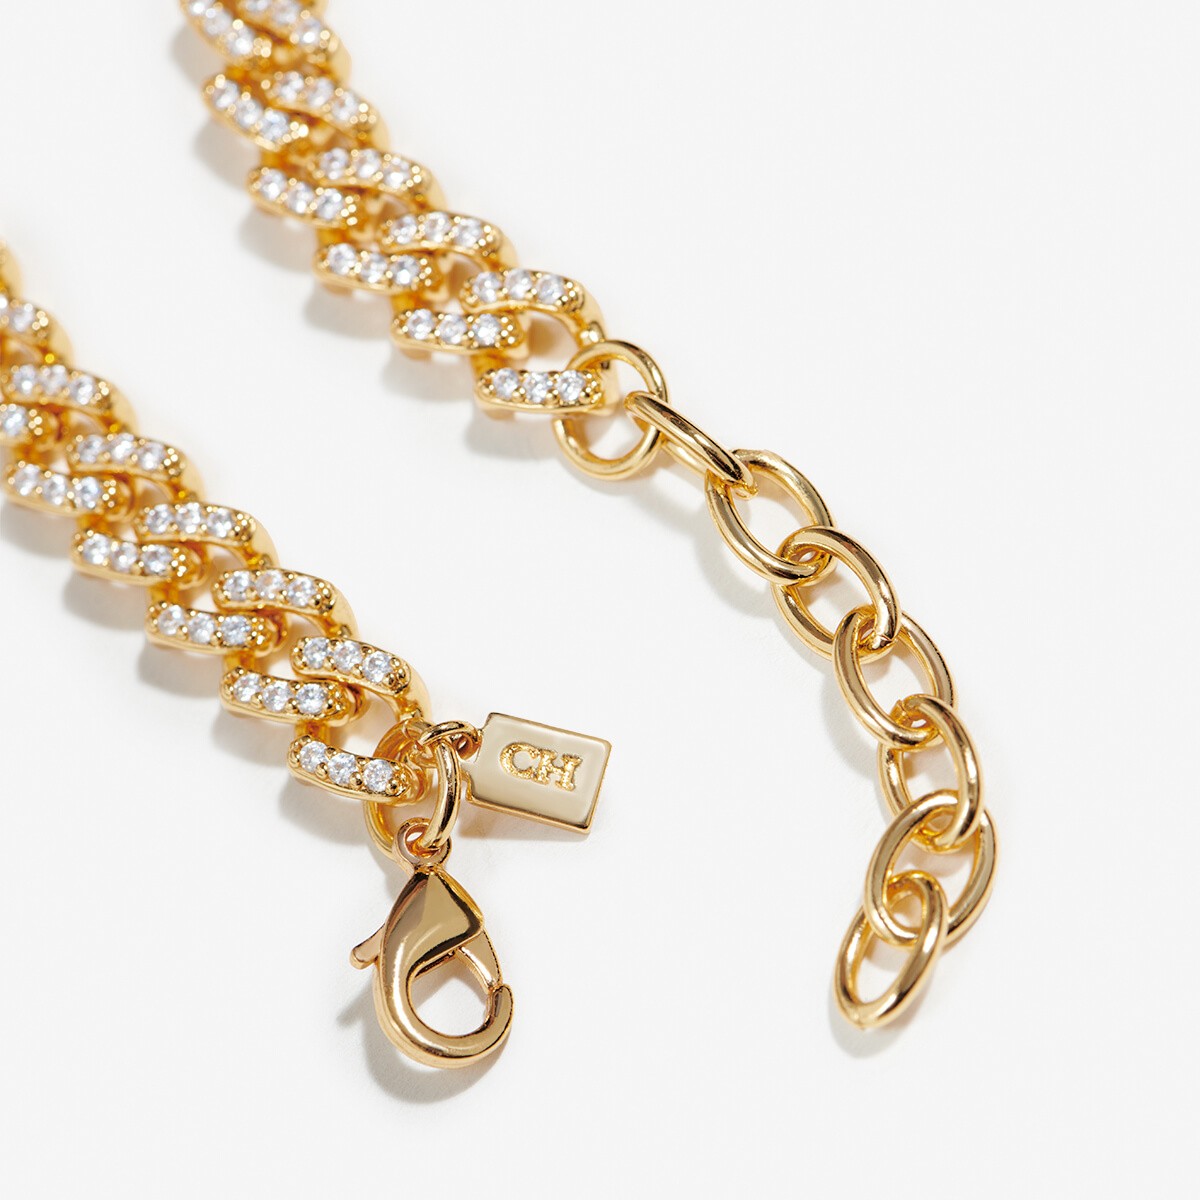 Mexican Chain - Halsketten - 18k vergoldet